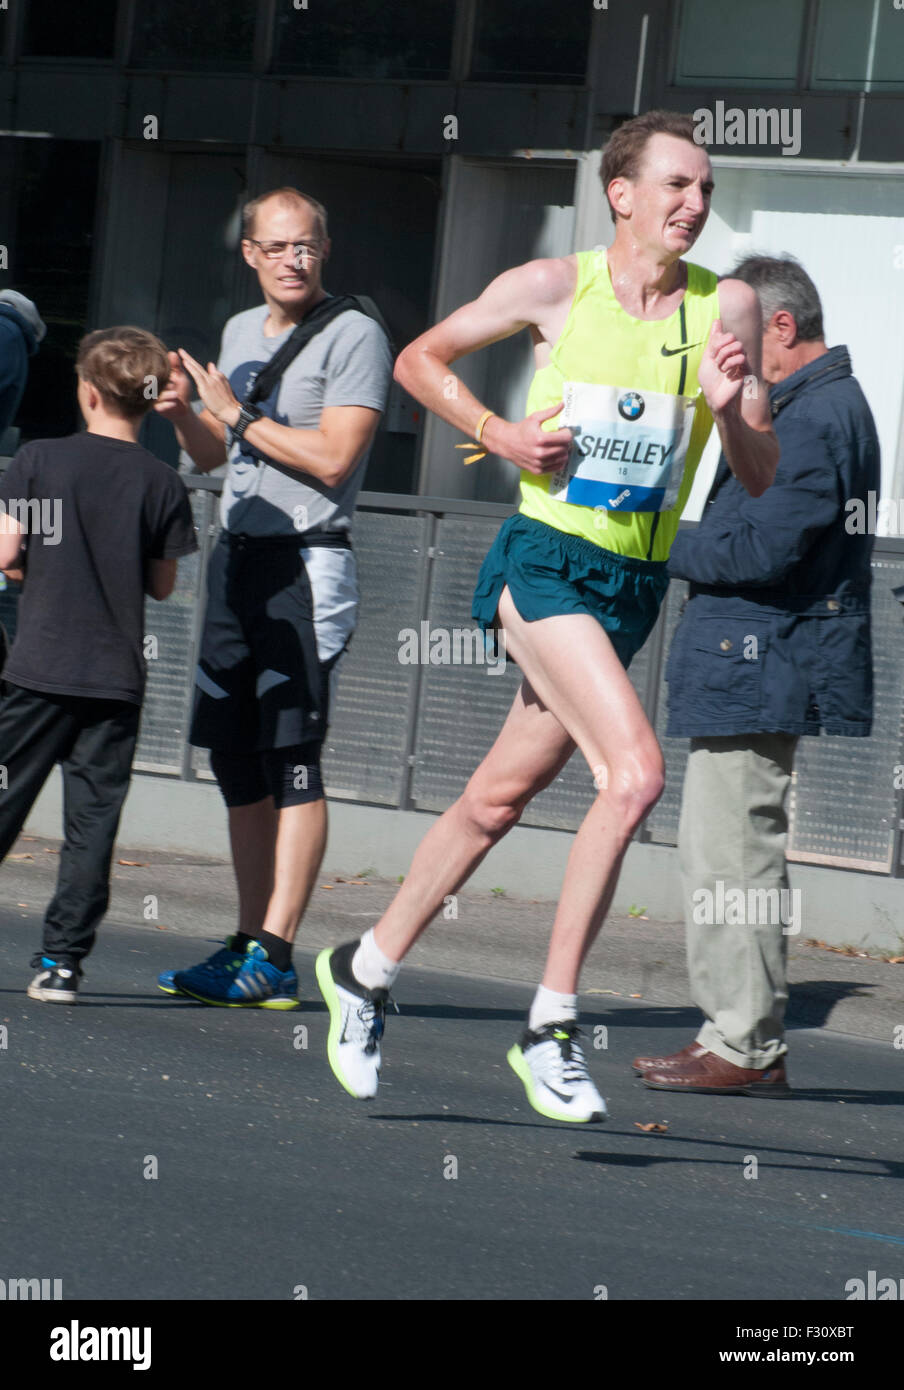 Berlino, Germania. Il 27 settembre, 2015. Atleta australiano Michael Shelley terminato dodicesimo nella quarantaduesima la maratona di Berlino, 2015 Credit: Filippo gioco/Alamy Live News Foto Stock